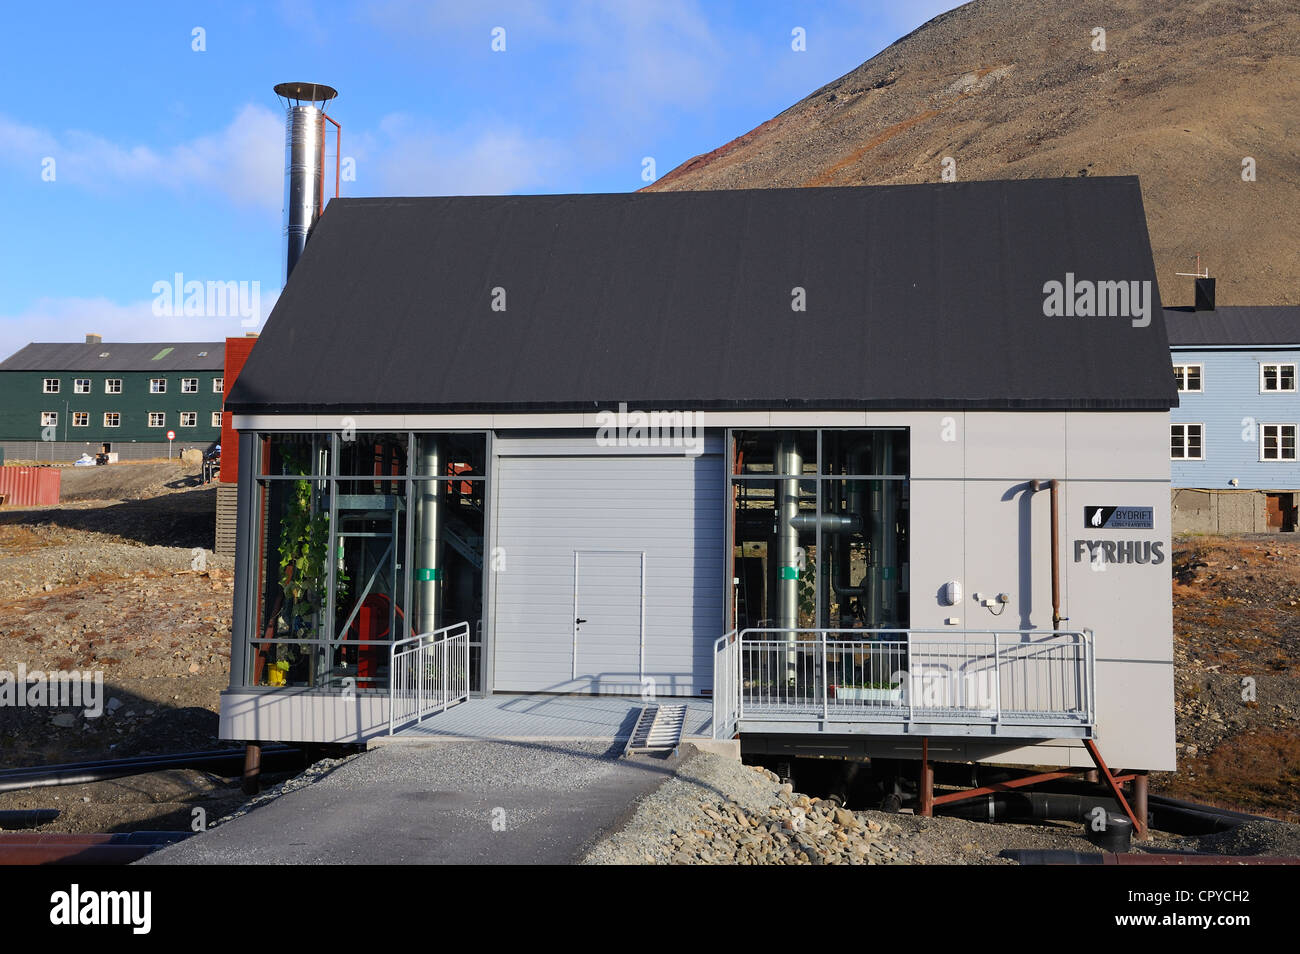 La Norvège, Svalbard (Spitzberg), Longyearbyen, station de chauffage Banque D'Images